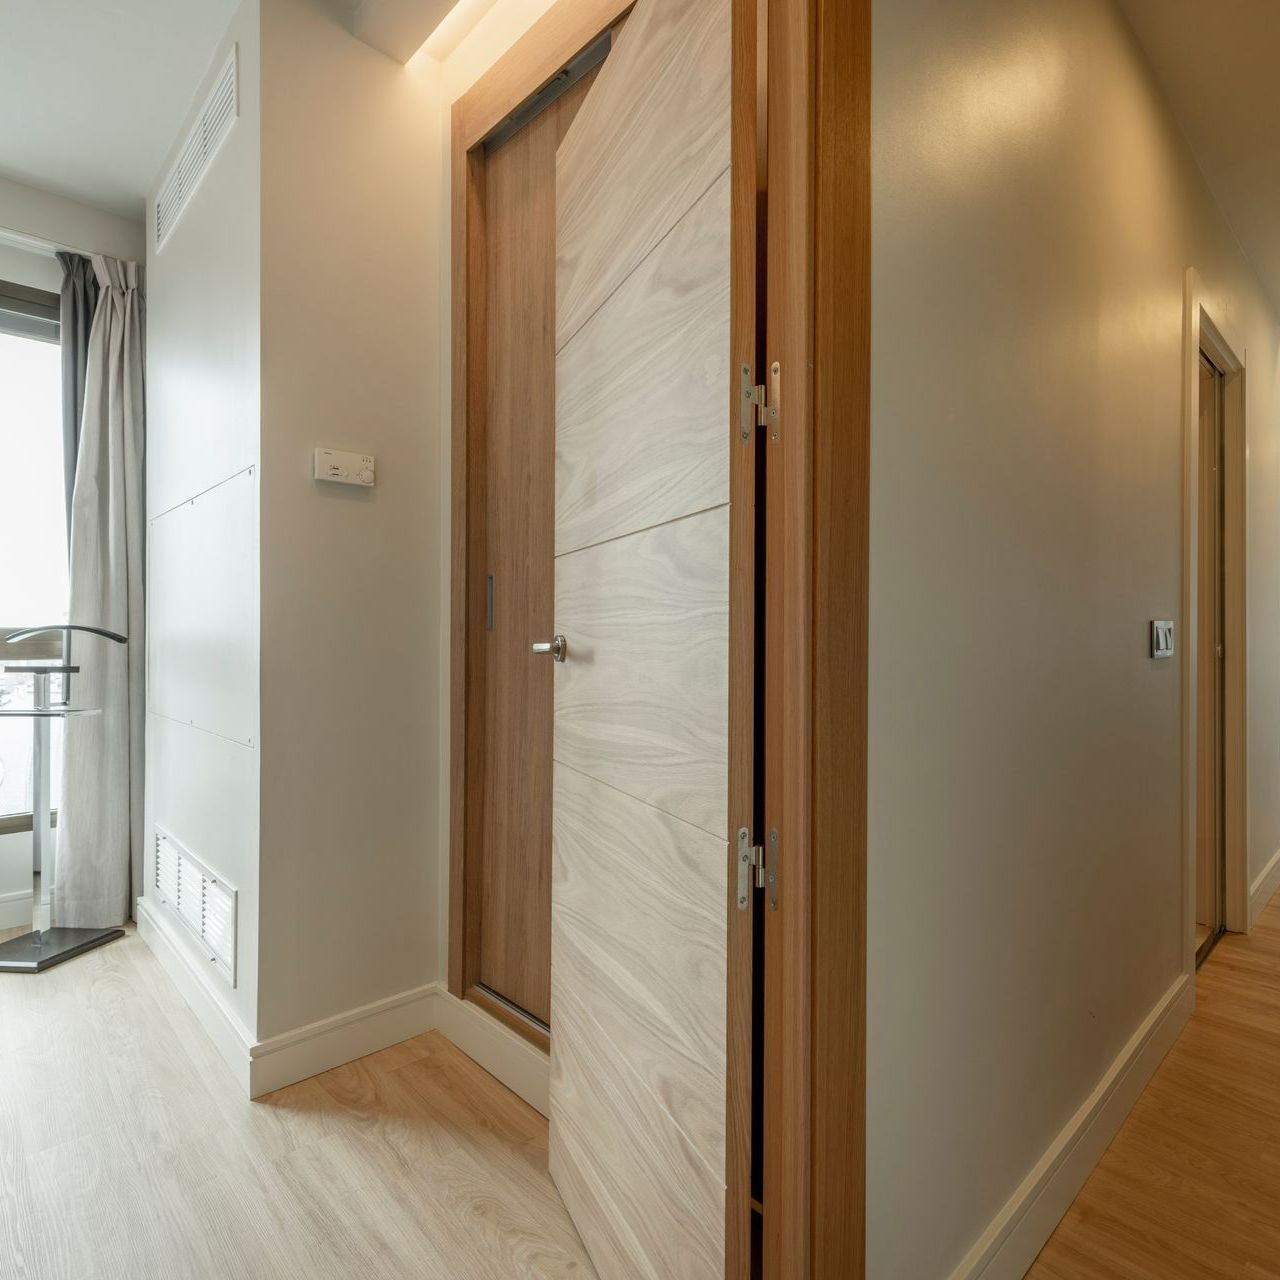 Couloir d'une maison avec une porte en bois ouverte